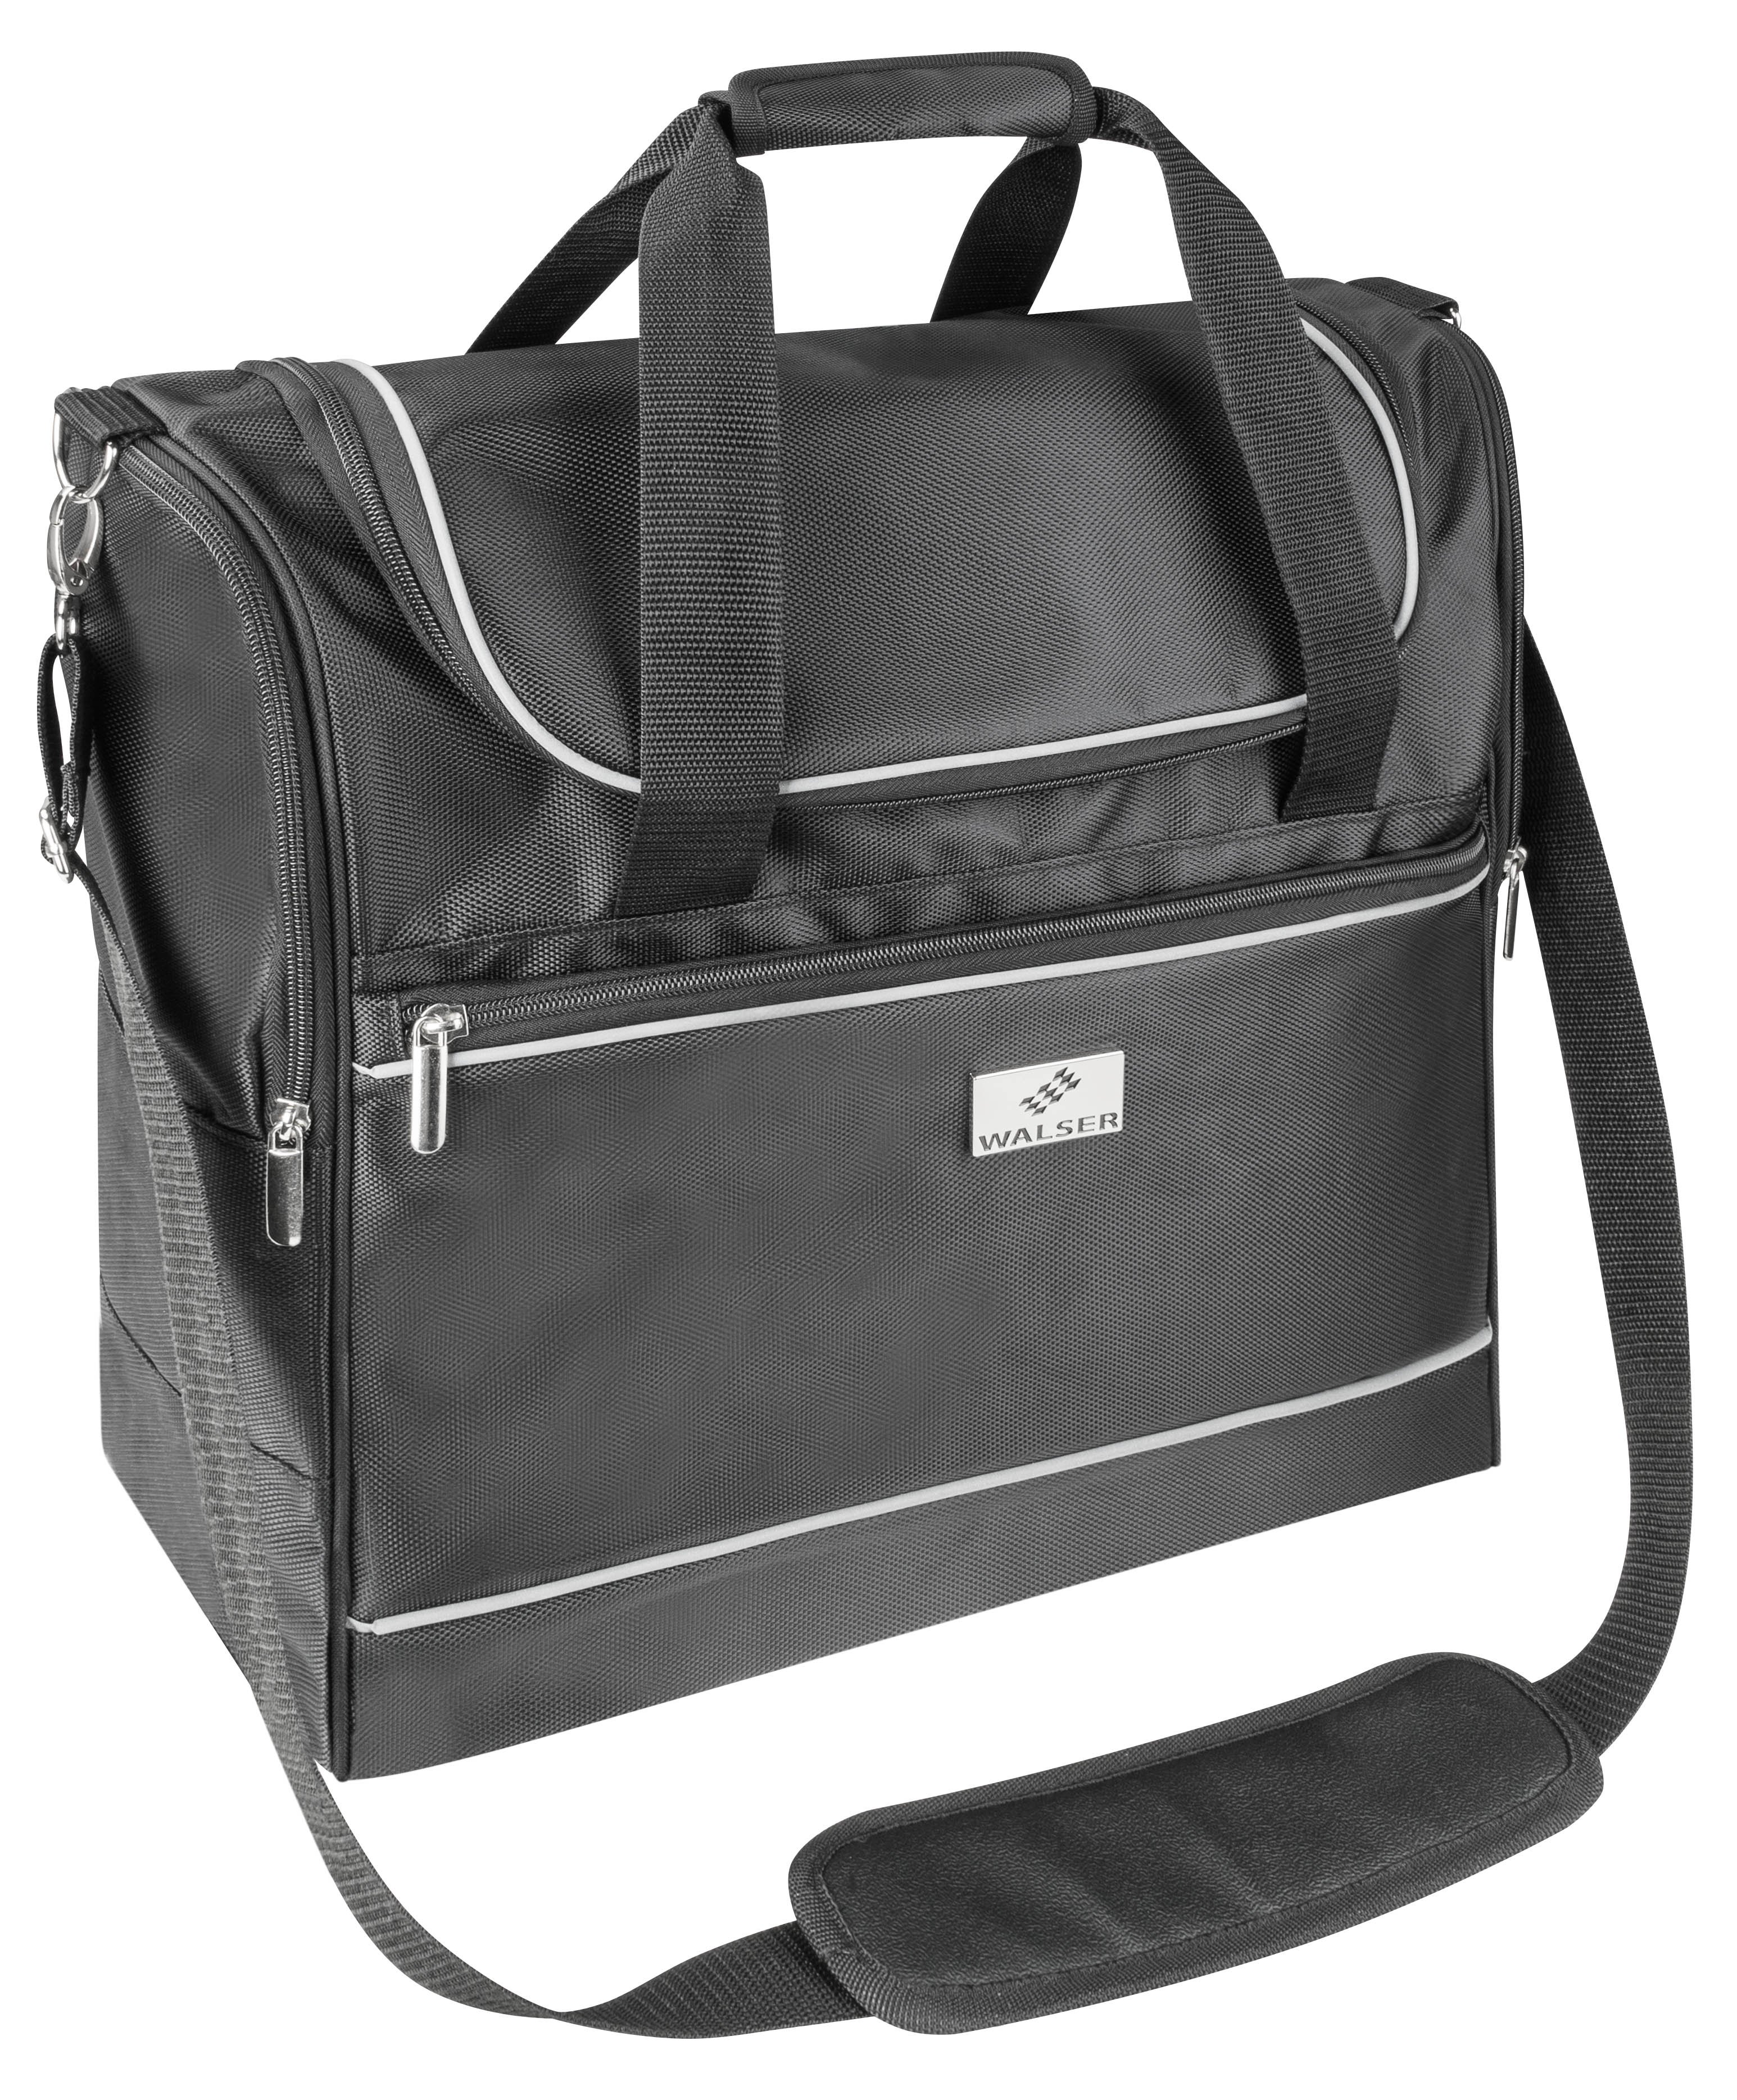 Carbags travel bag 50x20x40cm black